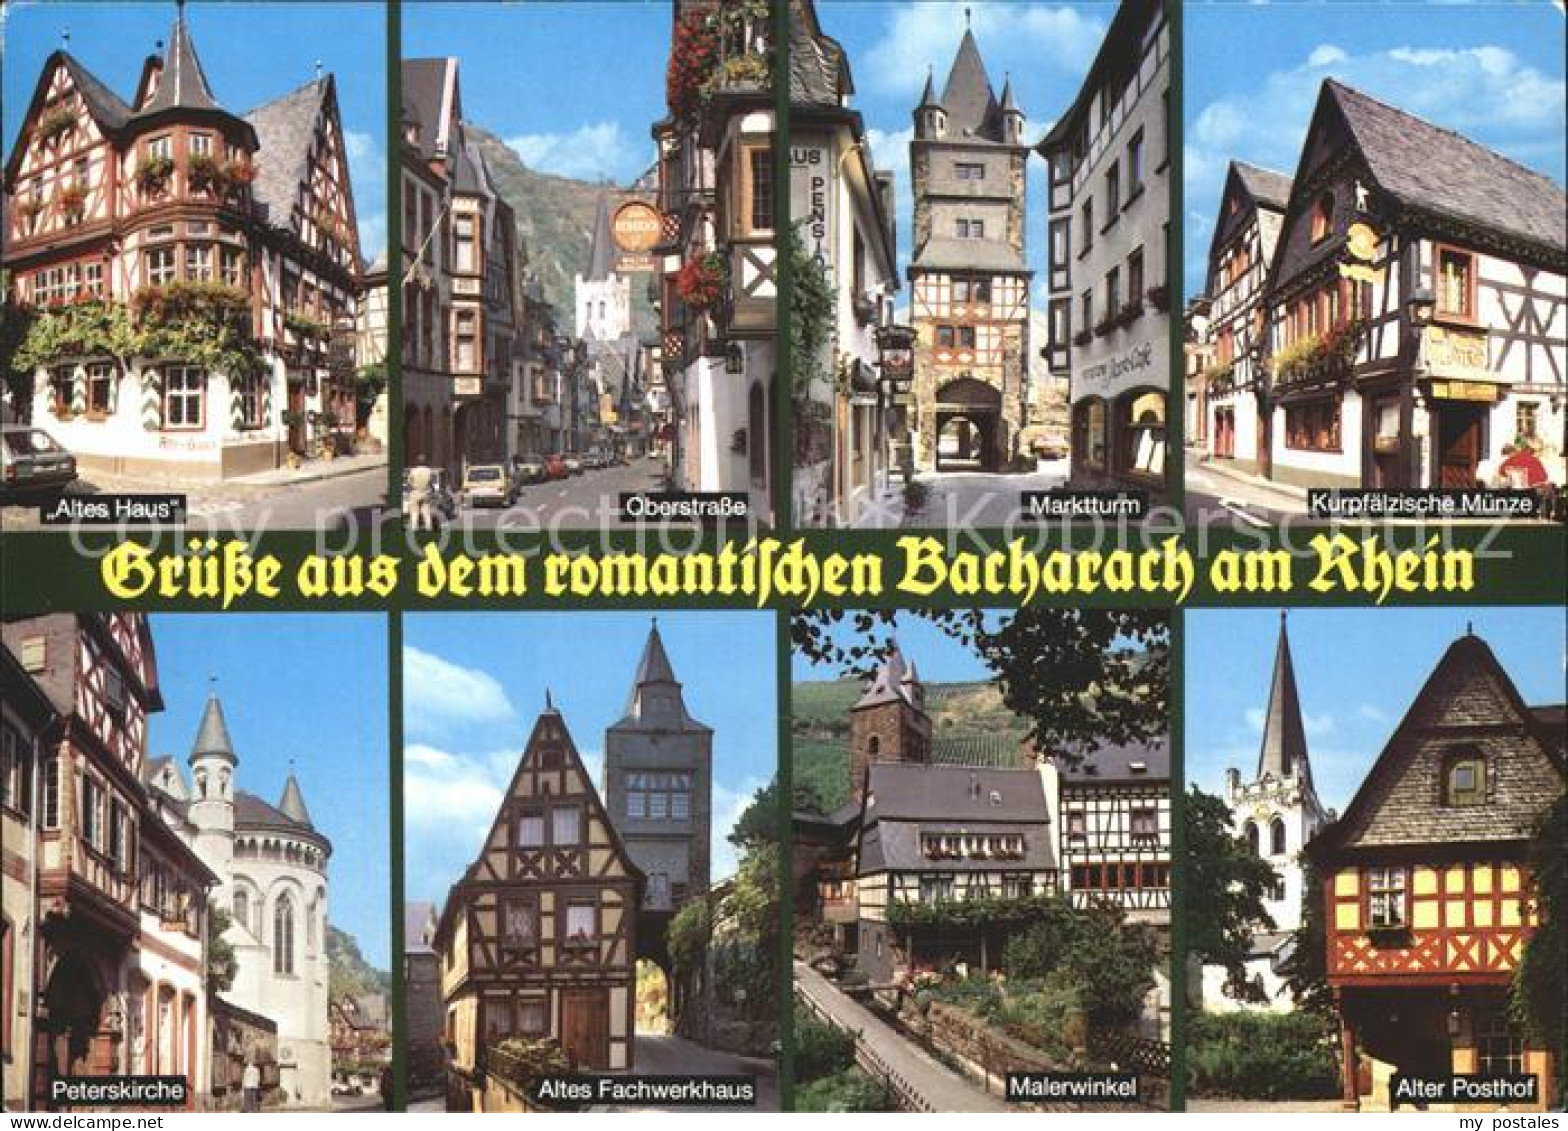 72375265 Bacharach Rhein Altes Haus Oberstrasse Marktturm Kurpfaelzische Muenze  - Bacharach